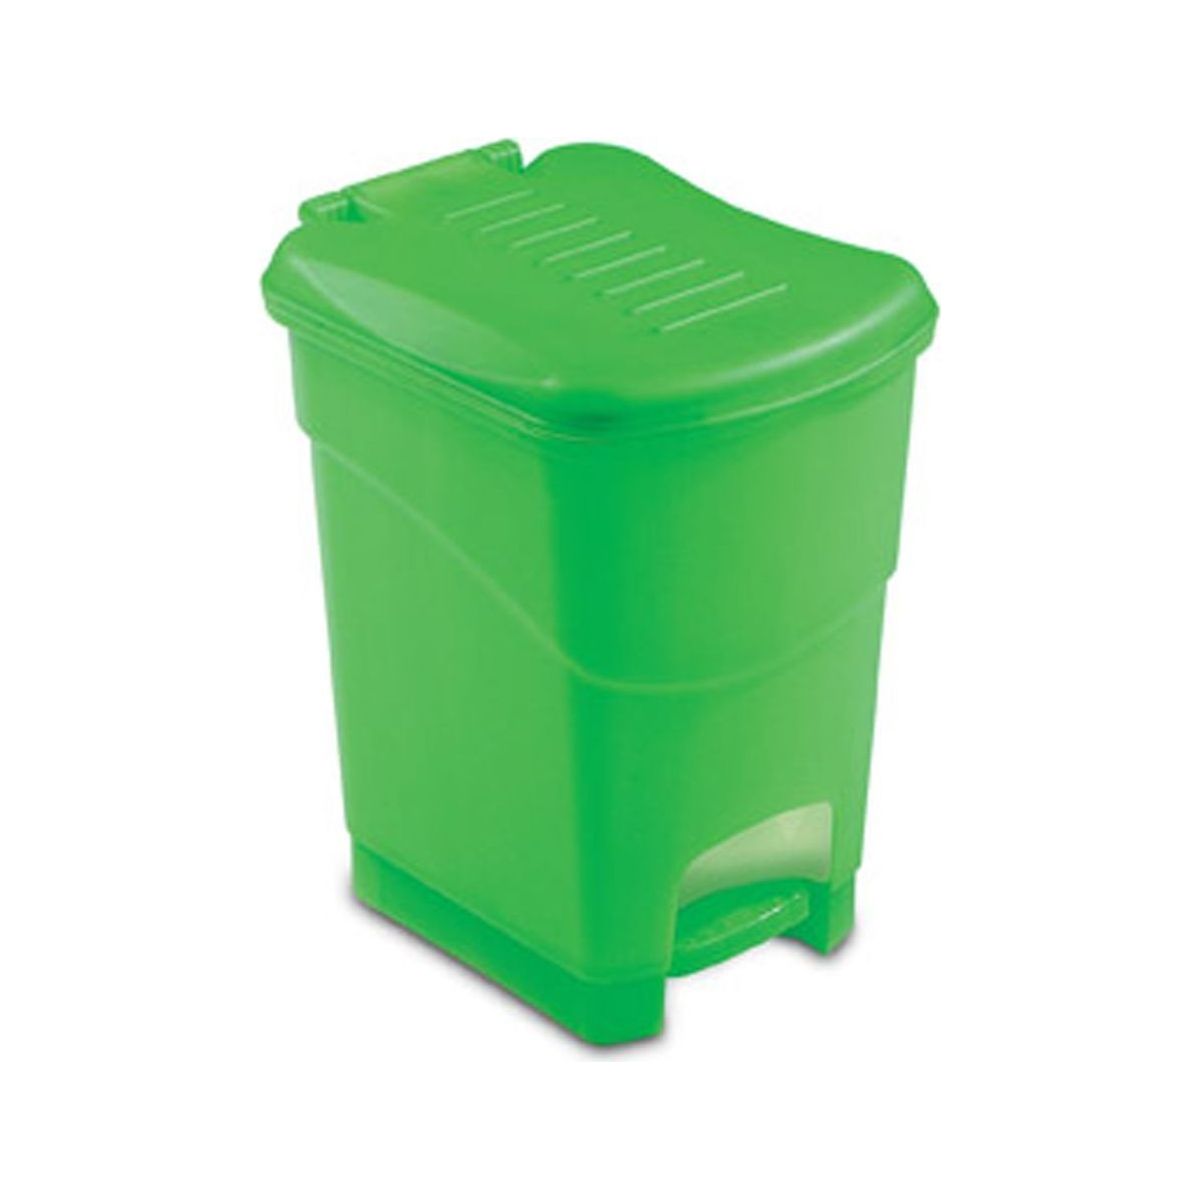 Odpadkový koš Koral Bin S zelený, 10 L